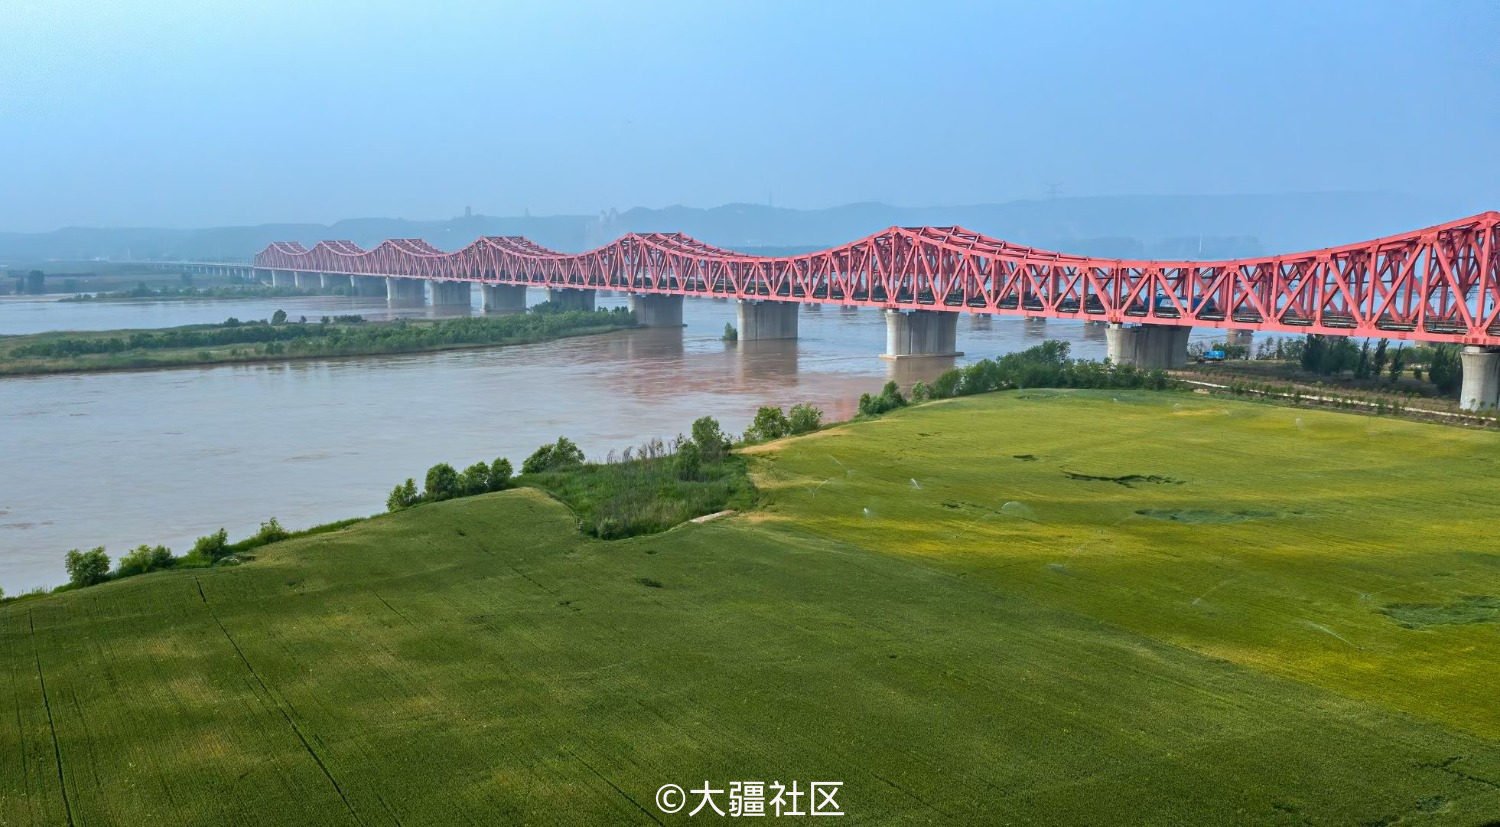 京广铁路黄河大桥图片